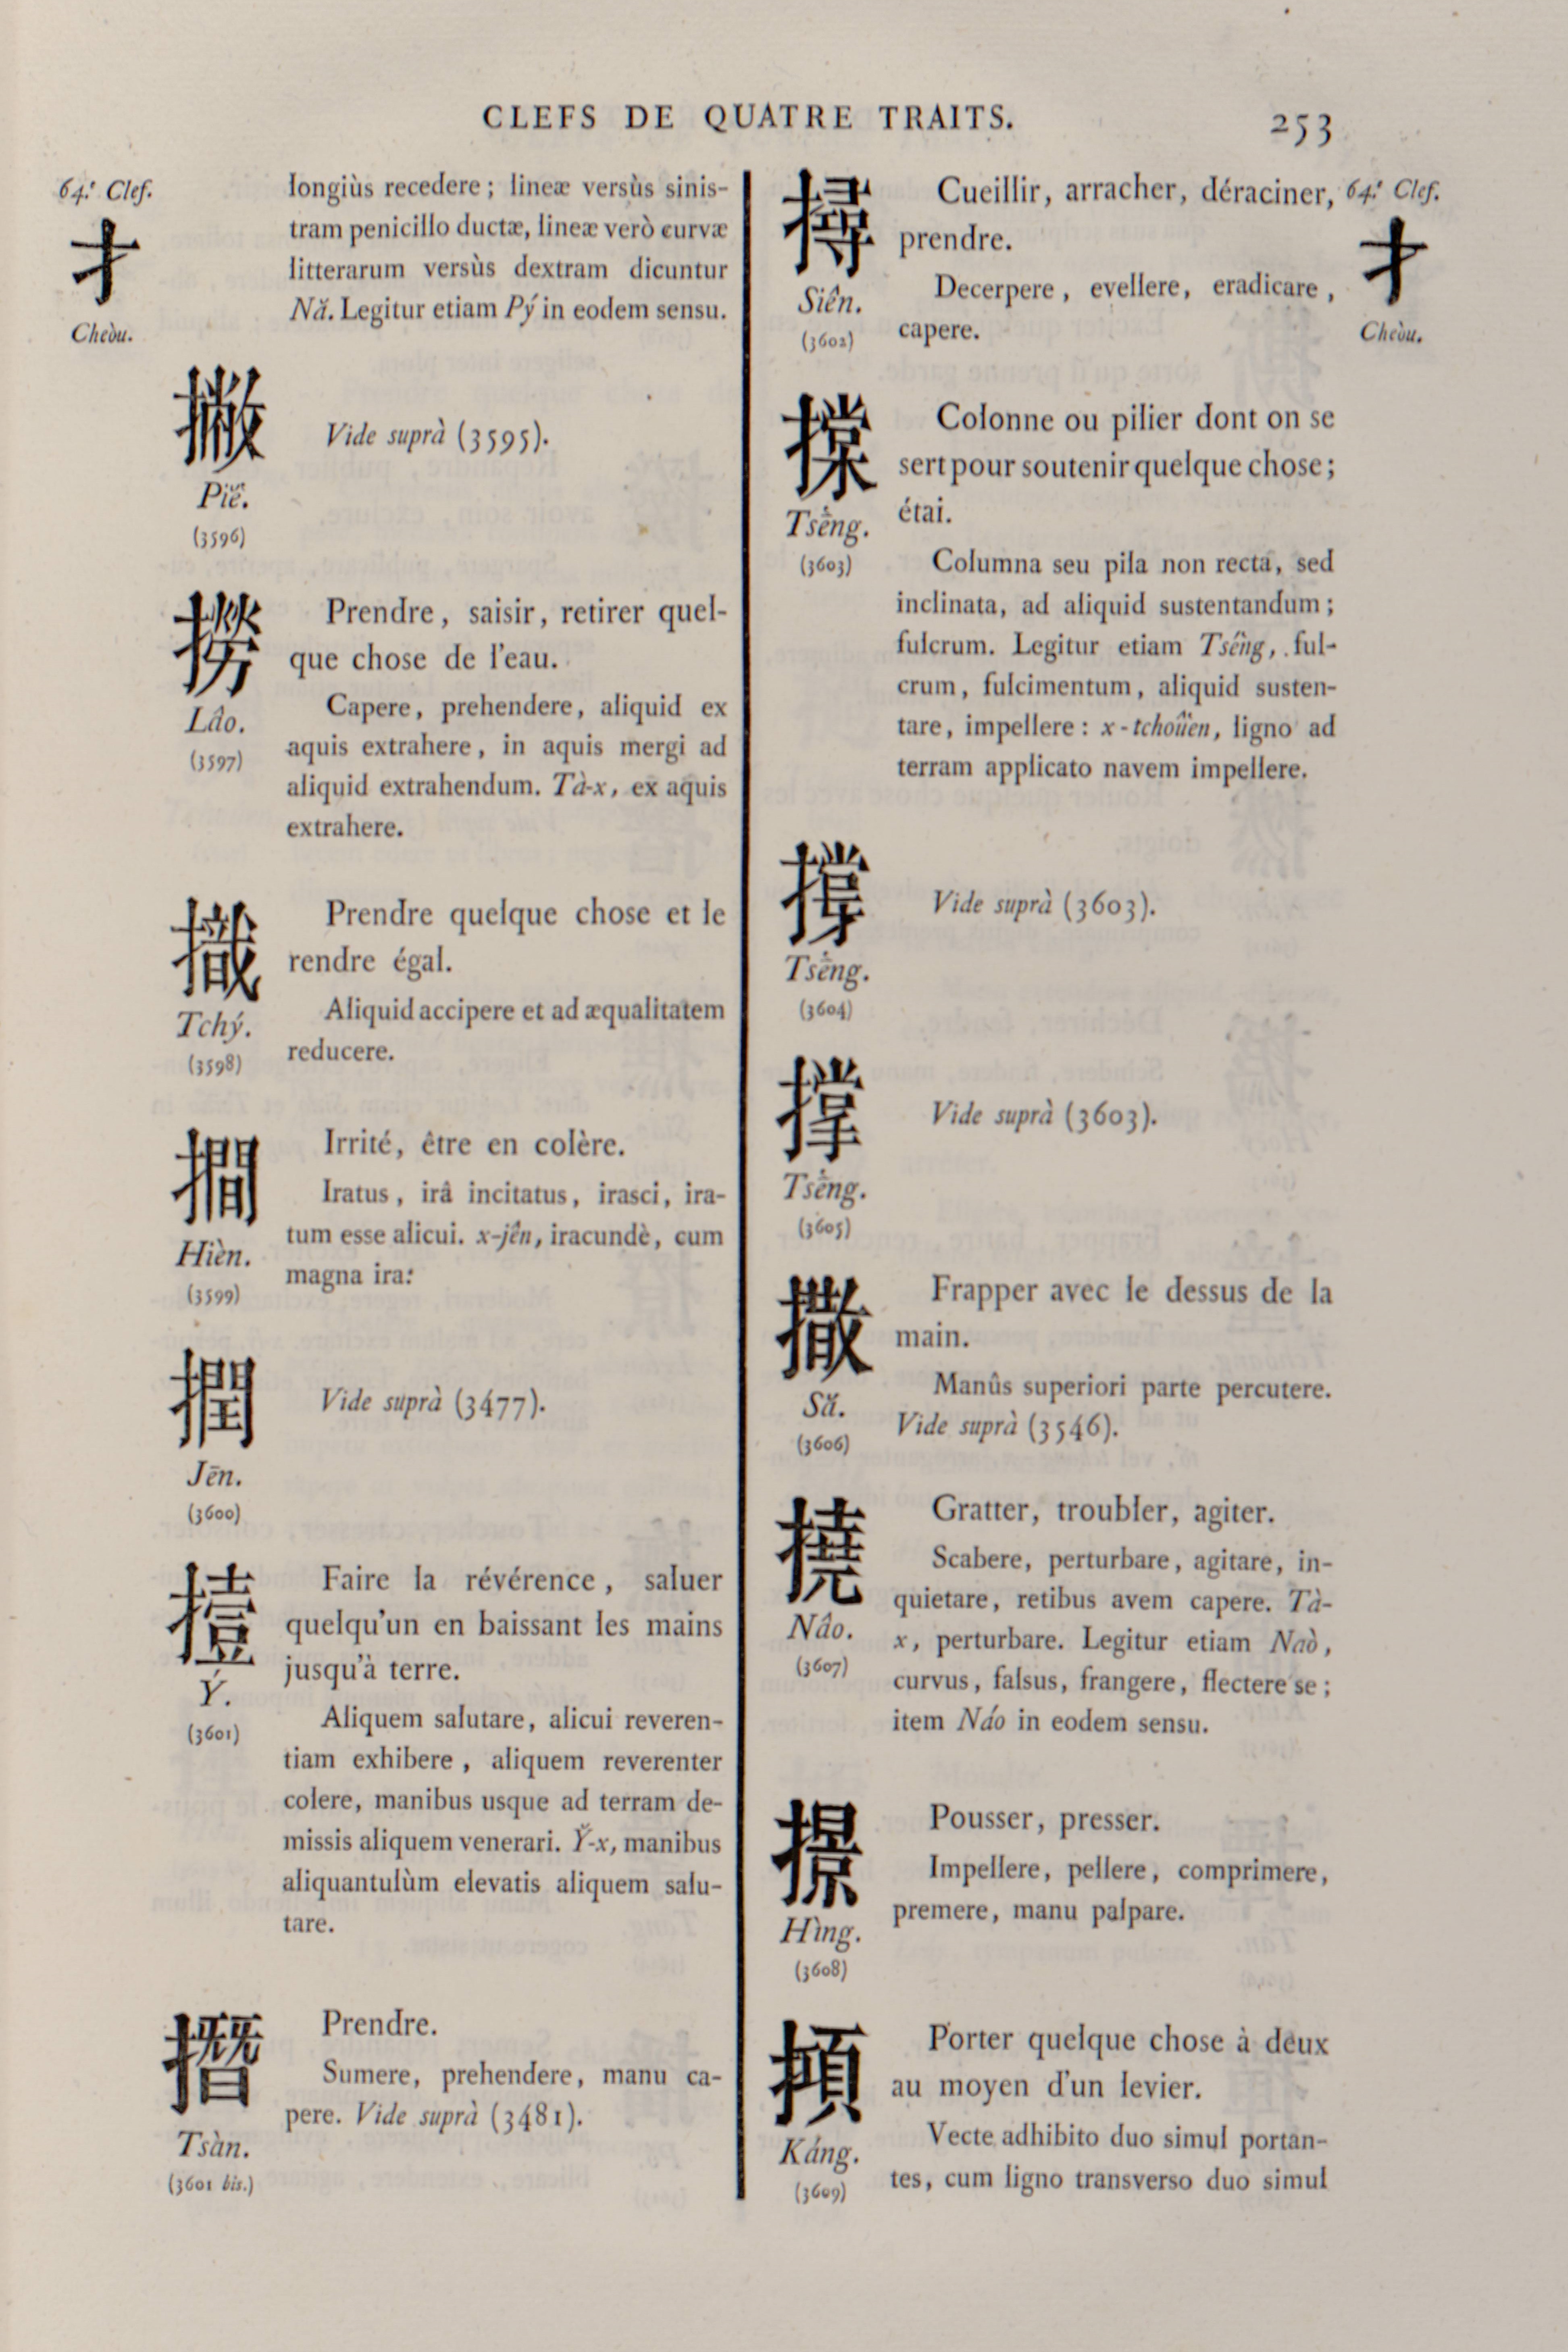 page 323 du dictionnaire français latin chinois